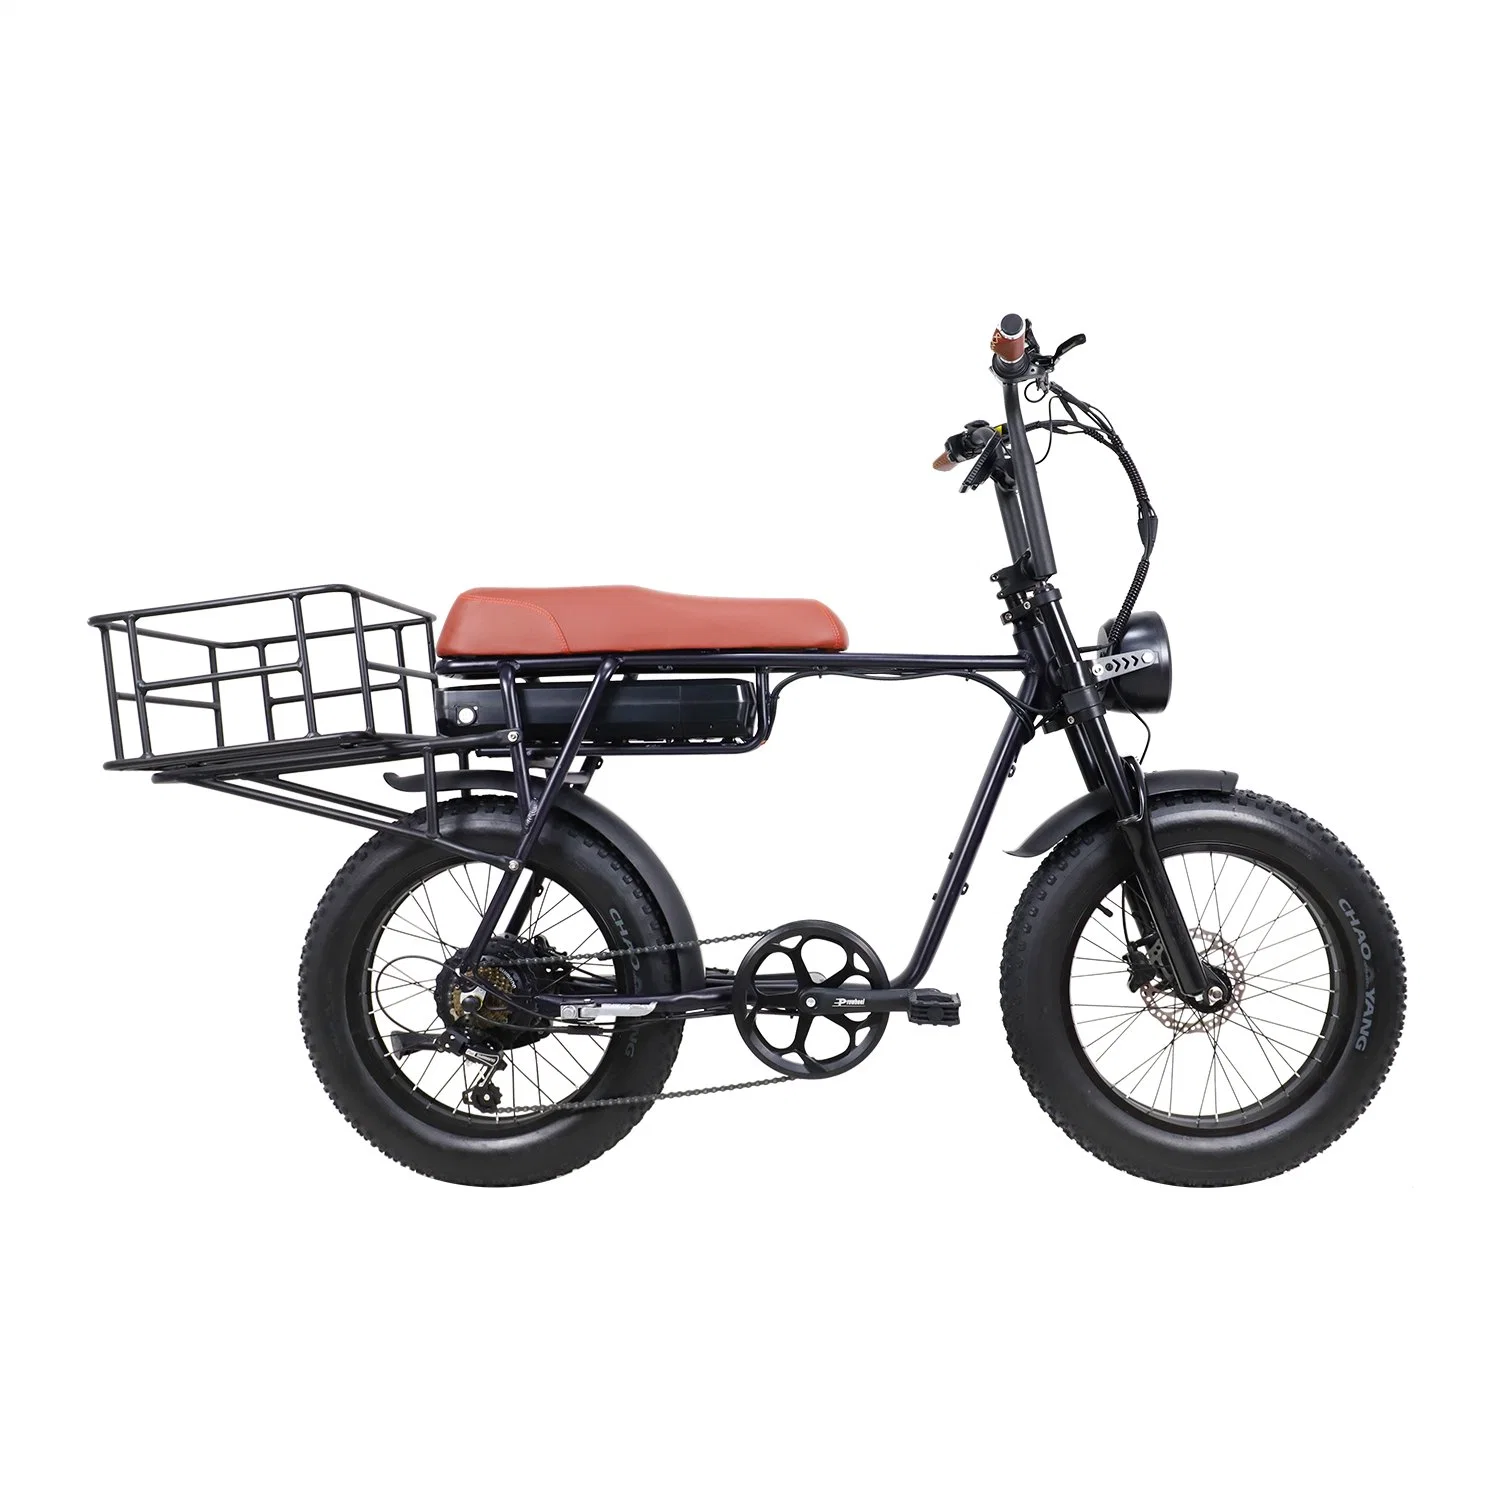 ATV Elektro Fahrrad 750W 1000W Motor 48V 20inch Fat Reifen E-Bike mit langer Reichweite – Offroad-MID-Drive-Anzeige Motorrad Hydraulische Bremse Elektrisches Fahrrad